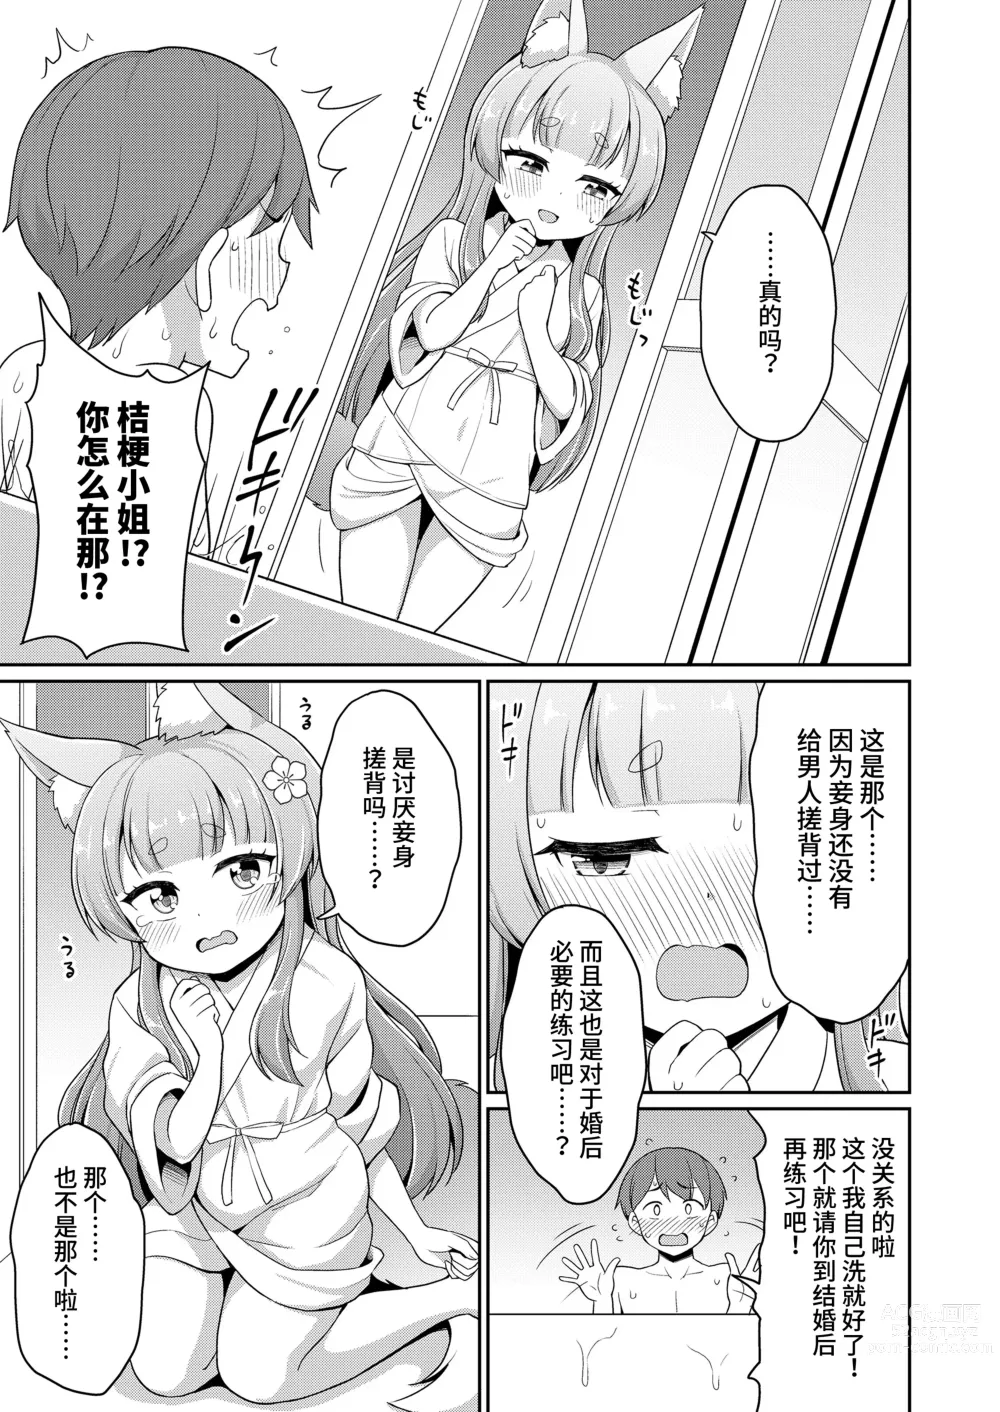 Page 9 of manga 婚活 1-2